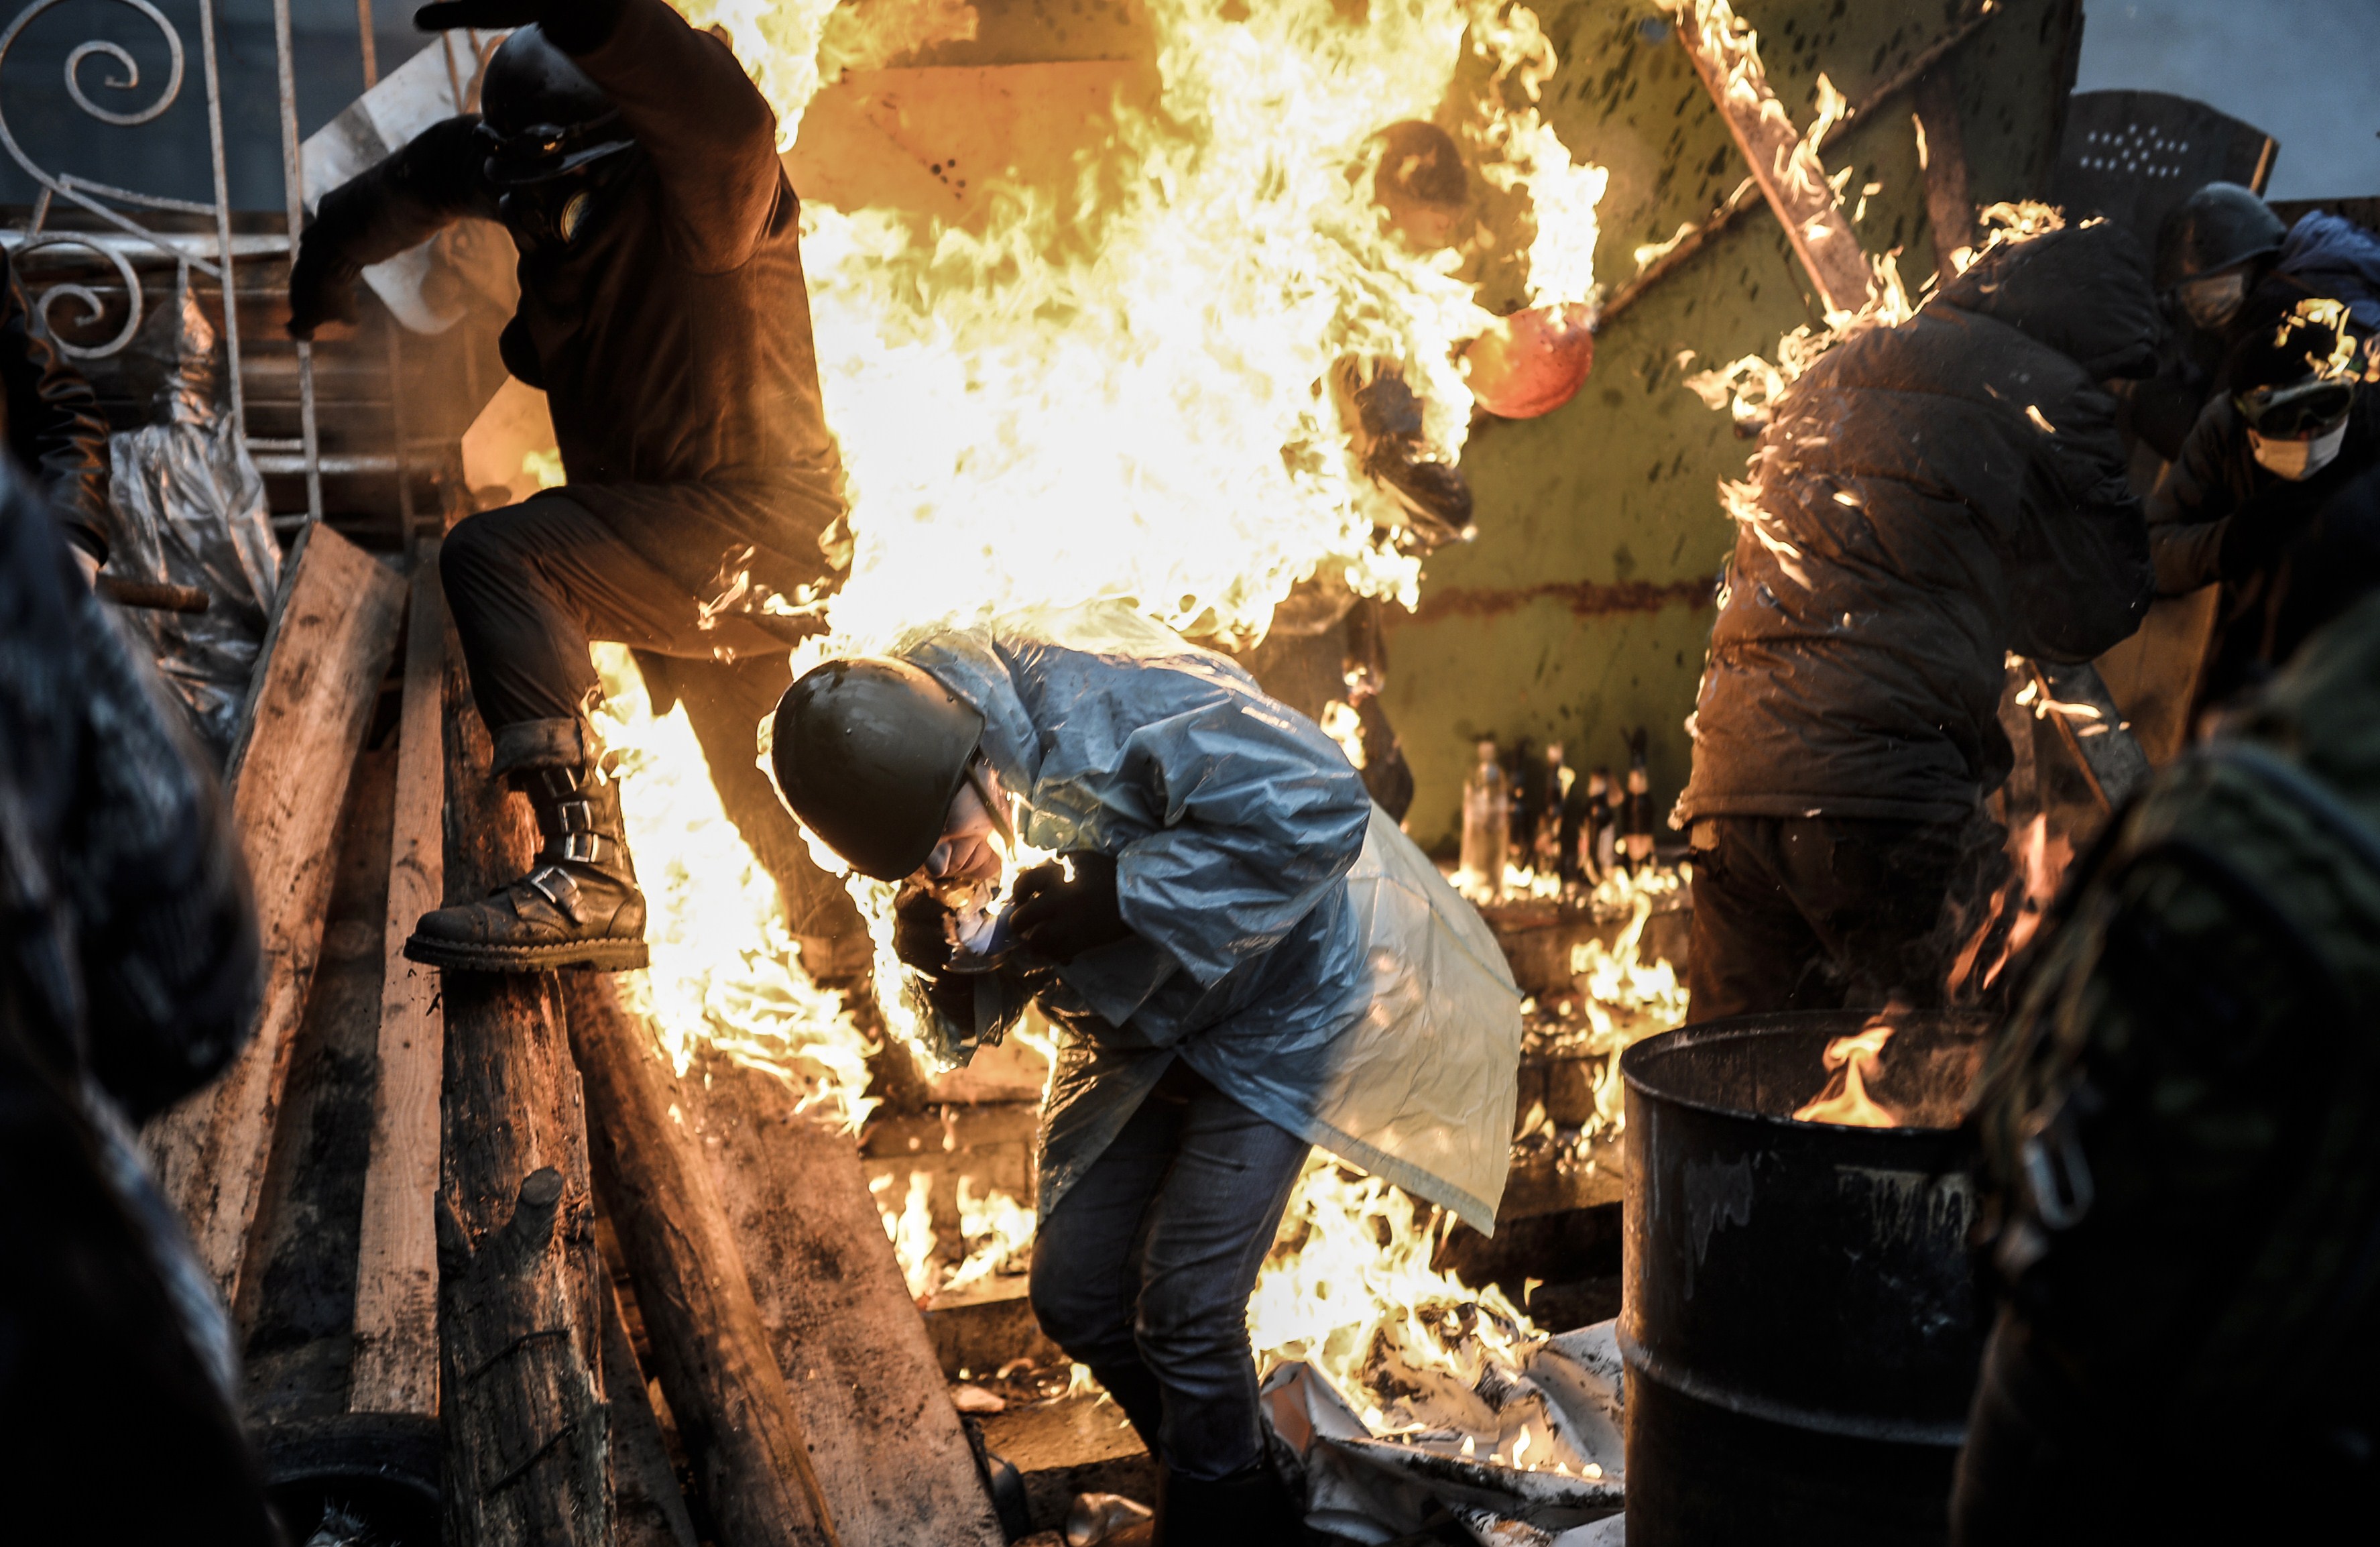 Euromaidan, revolutia care si-a luat numele de la un hashtag de pe internet. Momentele cheie ale celor 3 luni de revolte - Imaginea 10